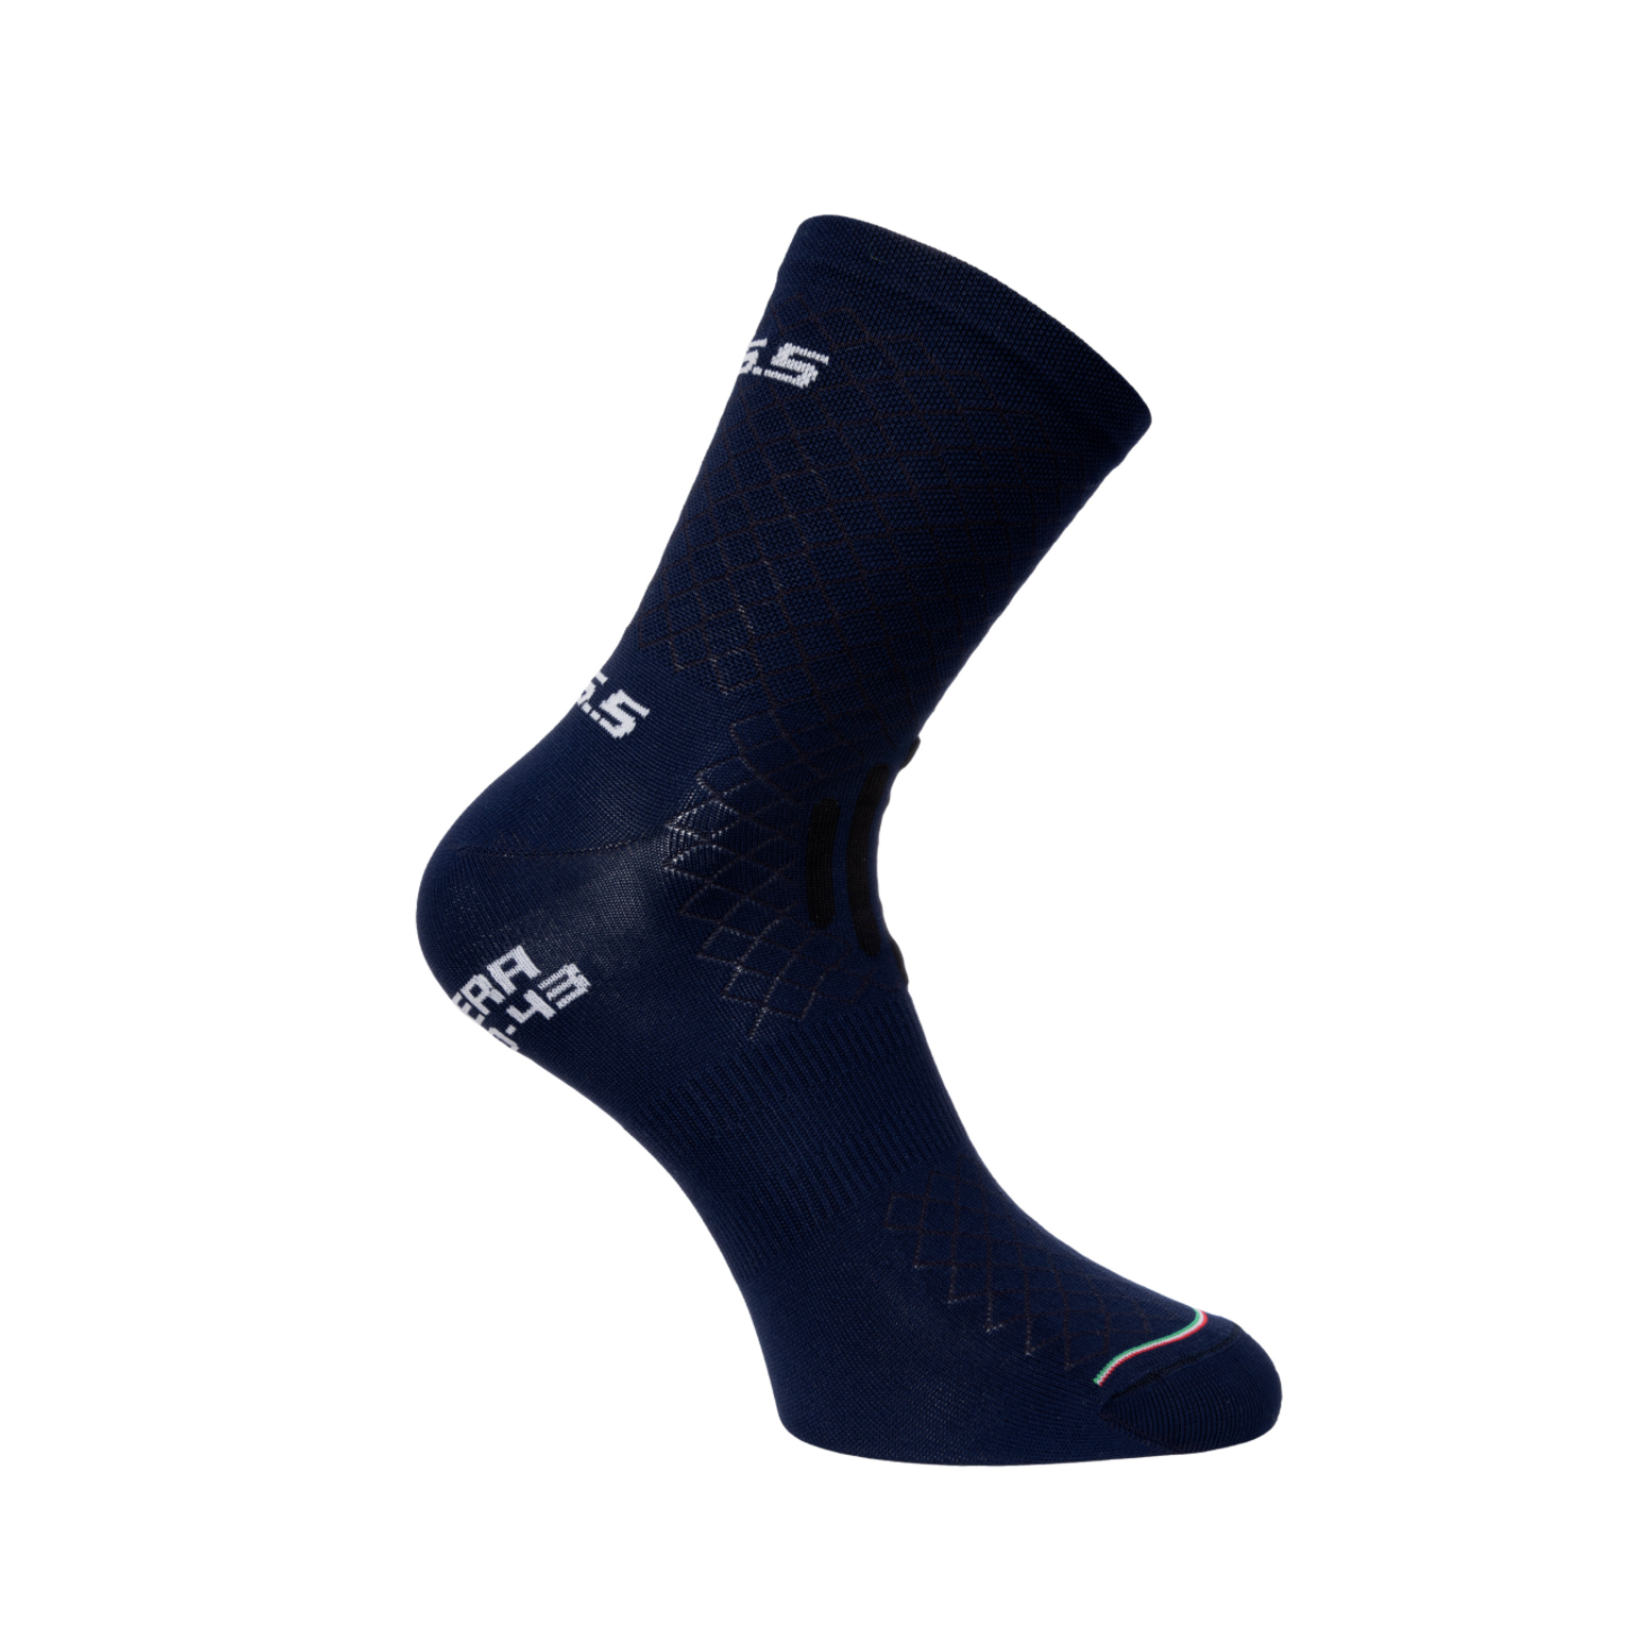 Q36.5 Q36.5 Leggera Socks - Navy Blue